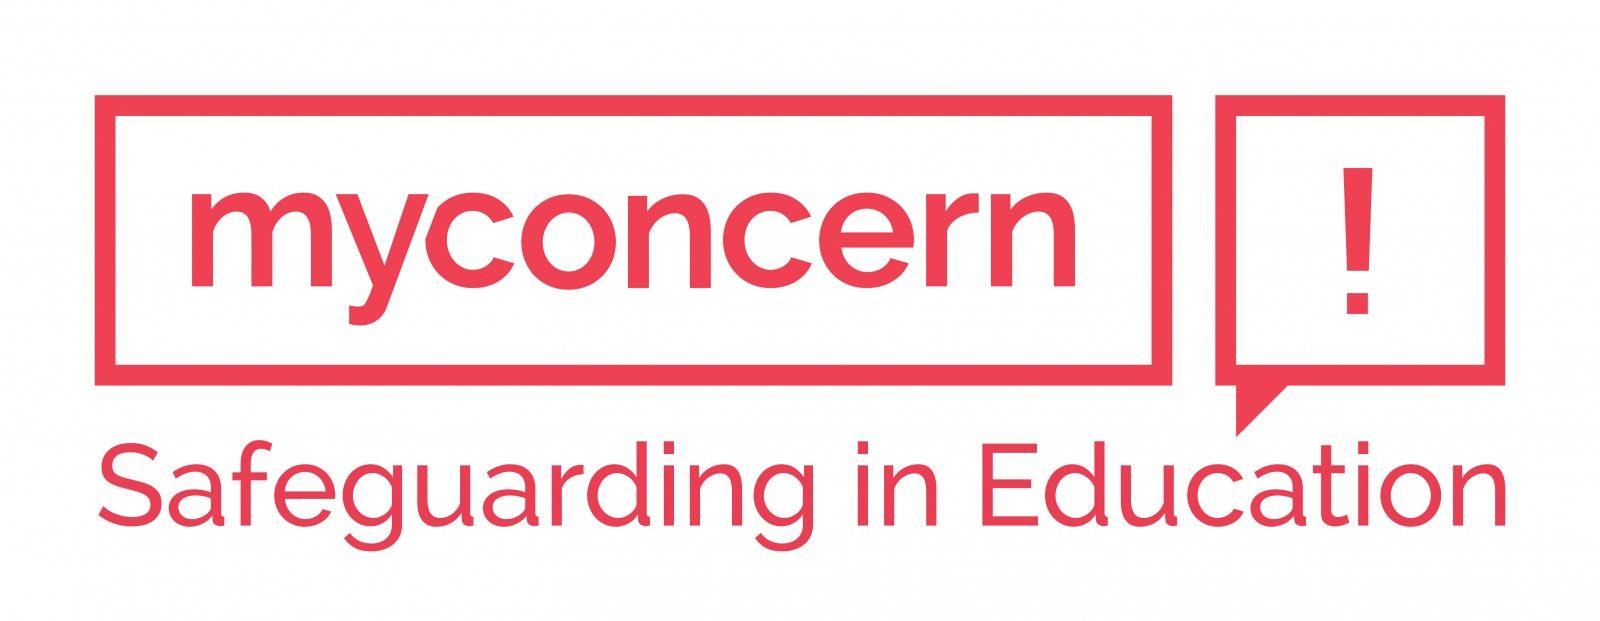 Concern Logo - My Concern Logo - MyConcern